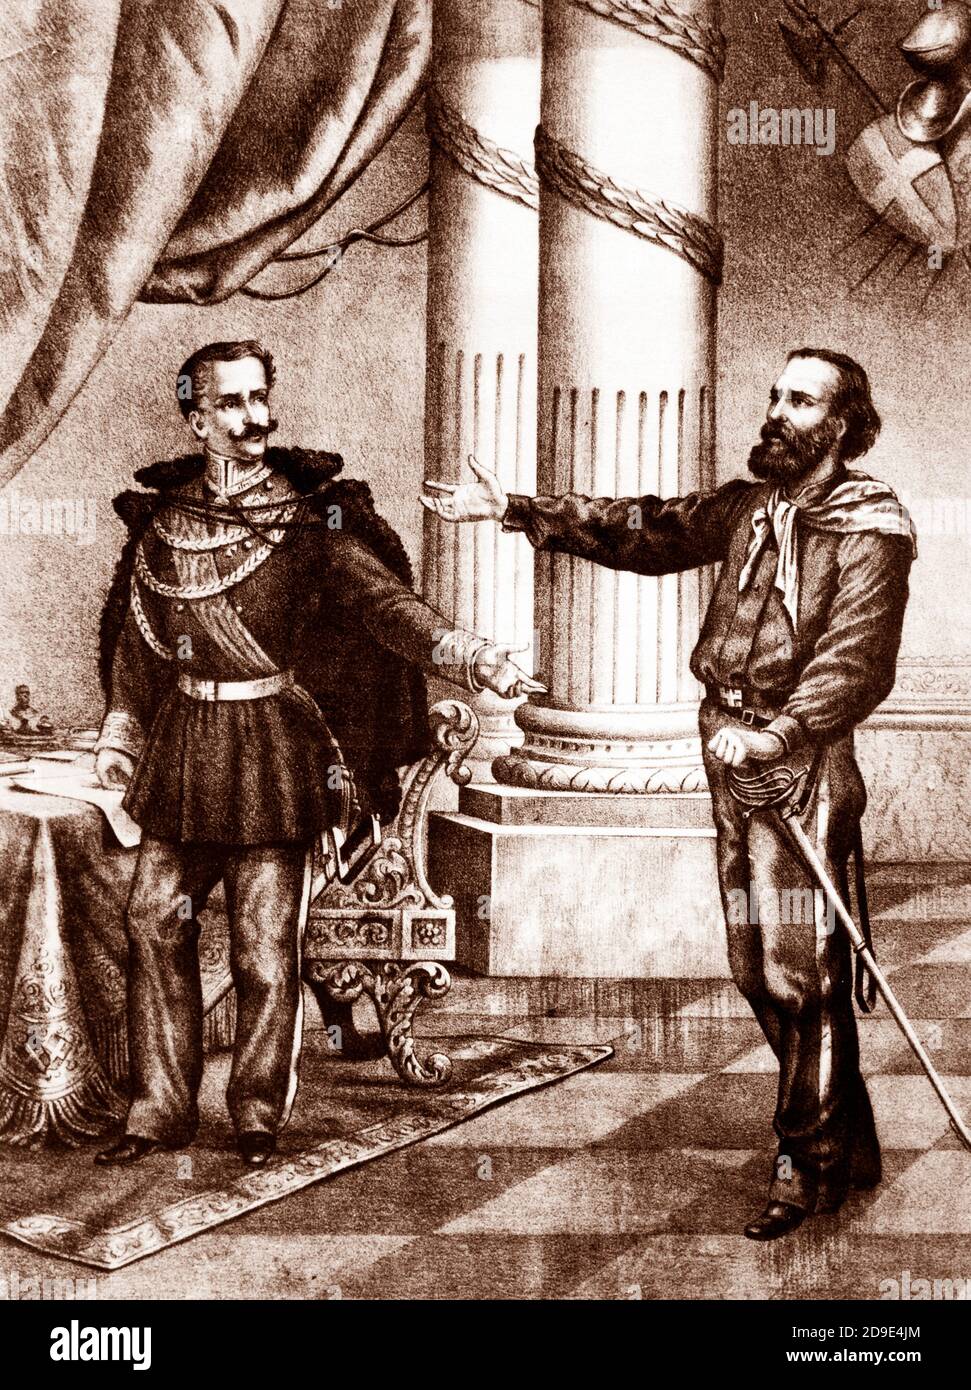 Meeting between carlo alberto di savoia and giuseppe garibaldi a roverbella, 1848 Stock Photo